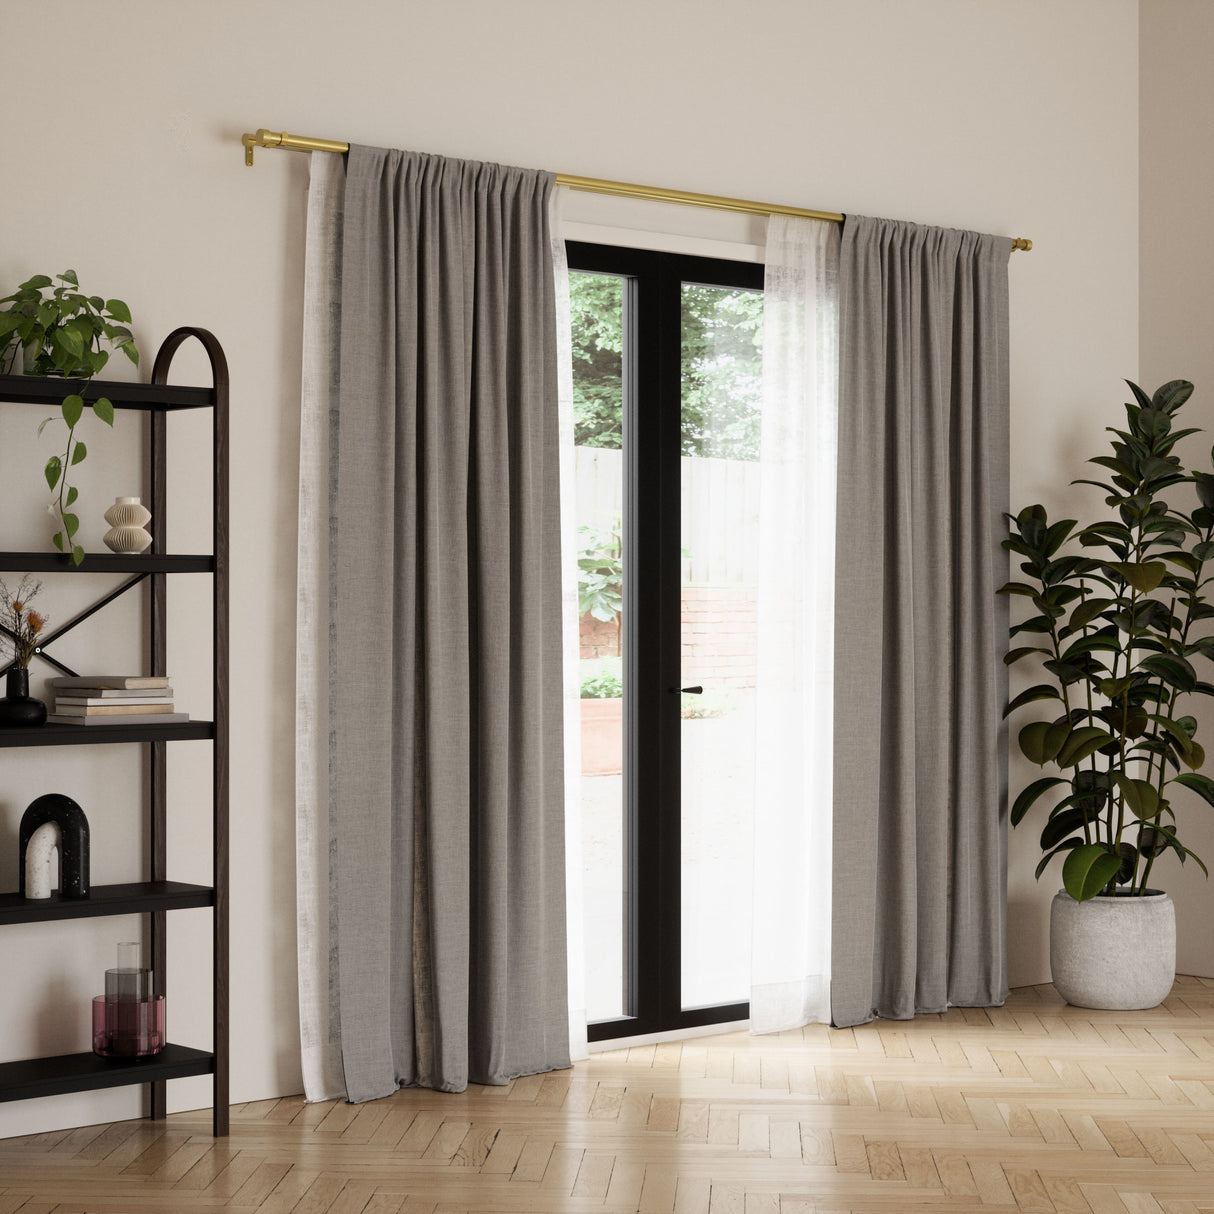 Double Curtain Rods | color: Brass | size: 66-120" (168-305 cm) | diameter: 1" (2.5 cm)